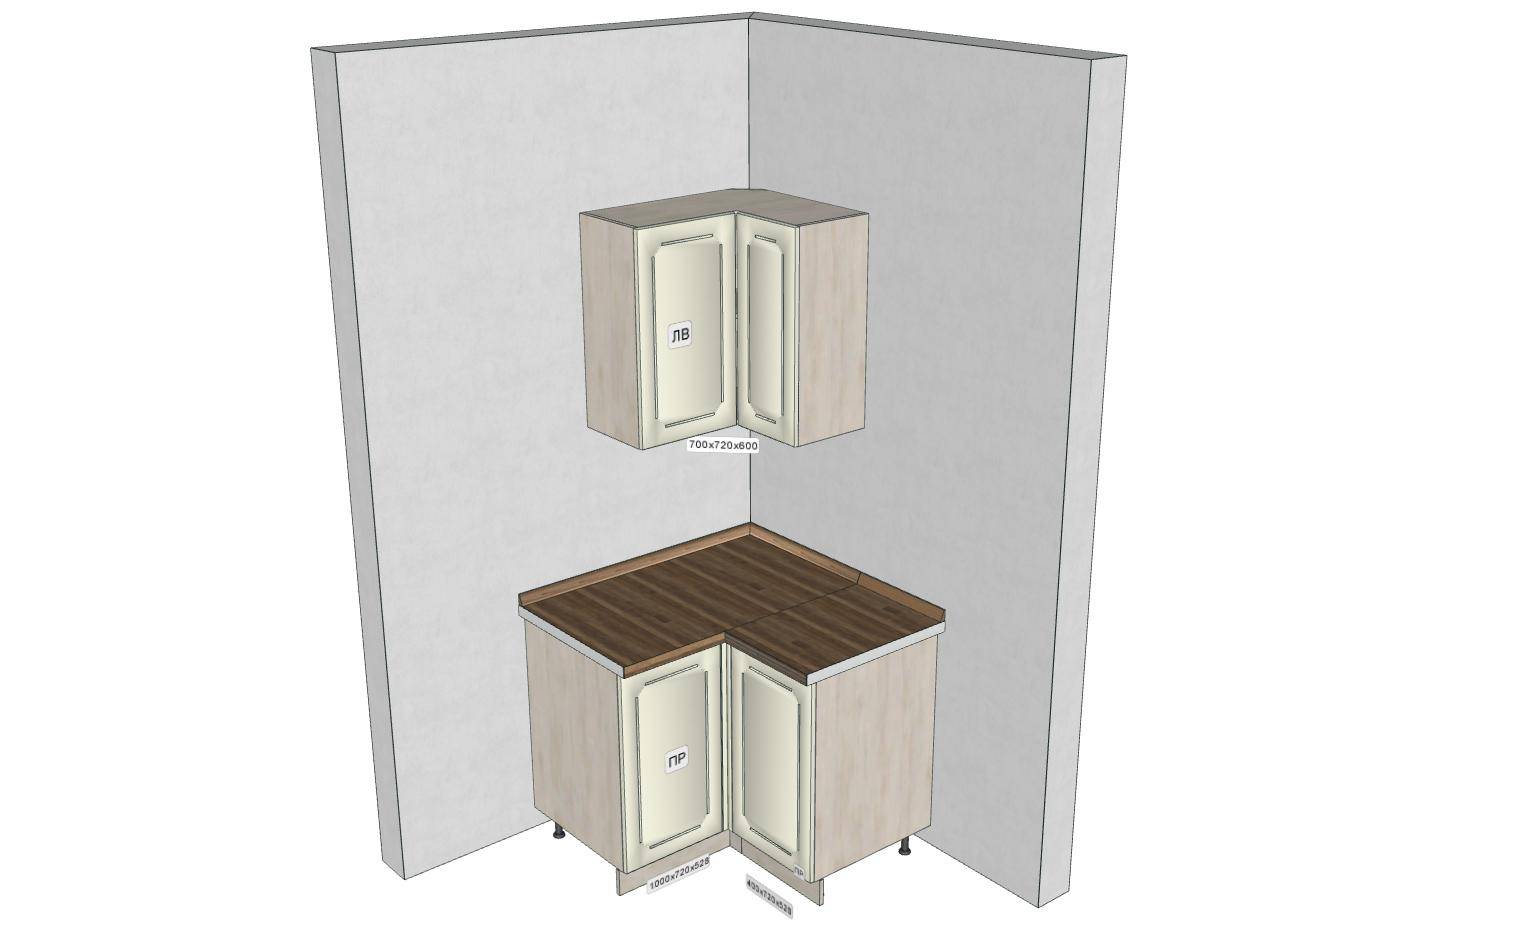 Угловой напольный шкаф под мойку для кухни: виды и дополнительные функции кухонной тумбы